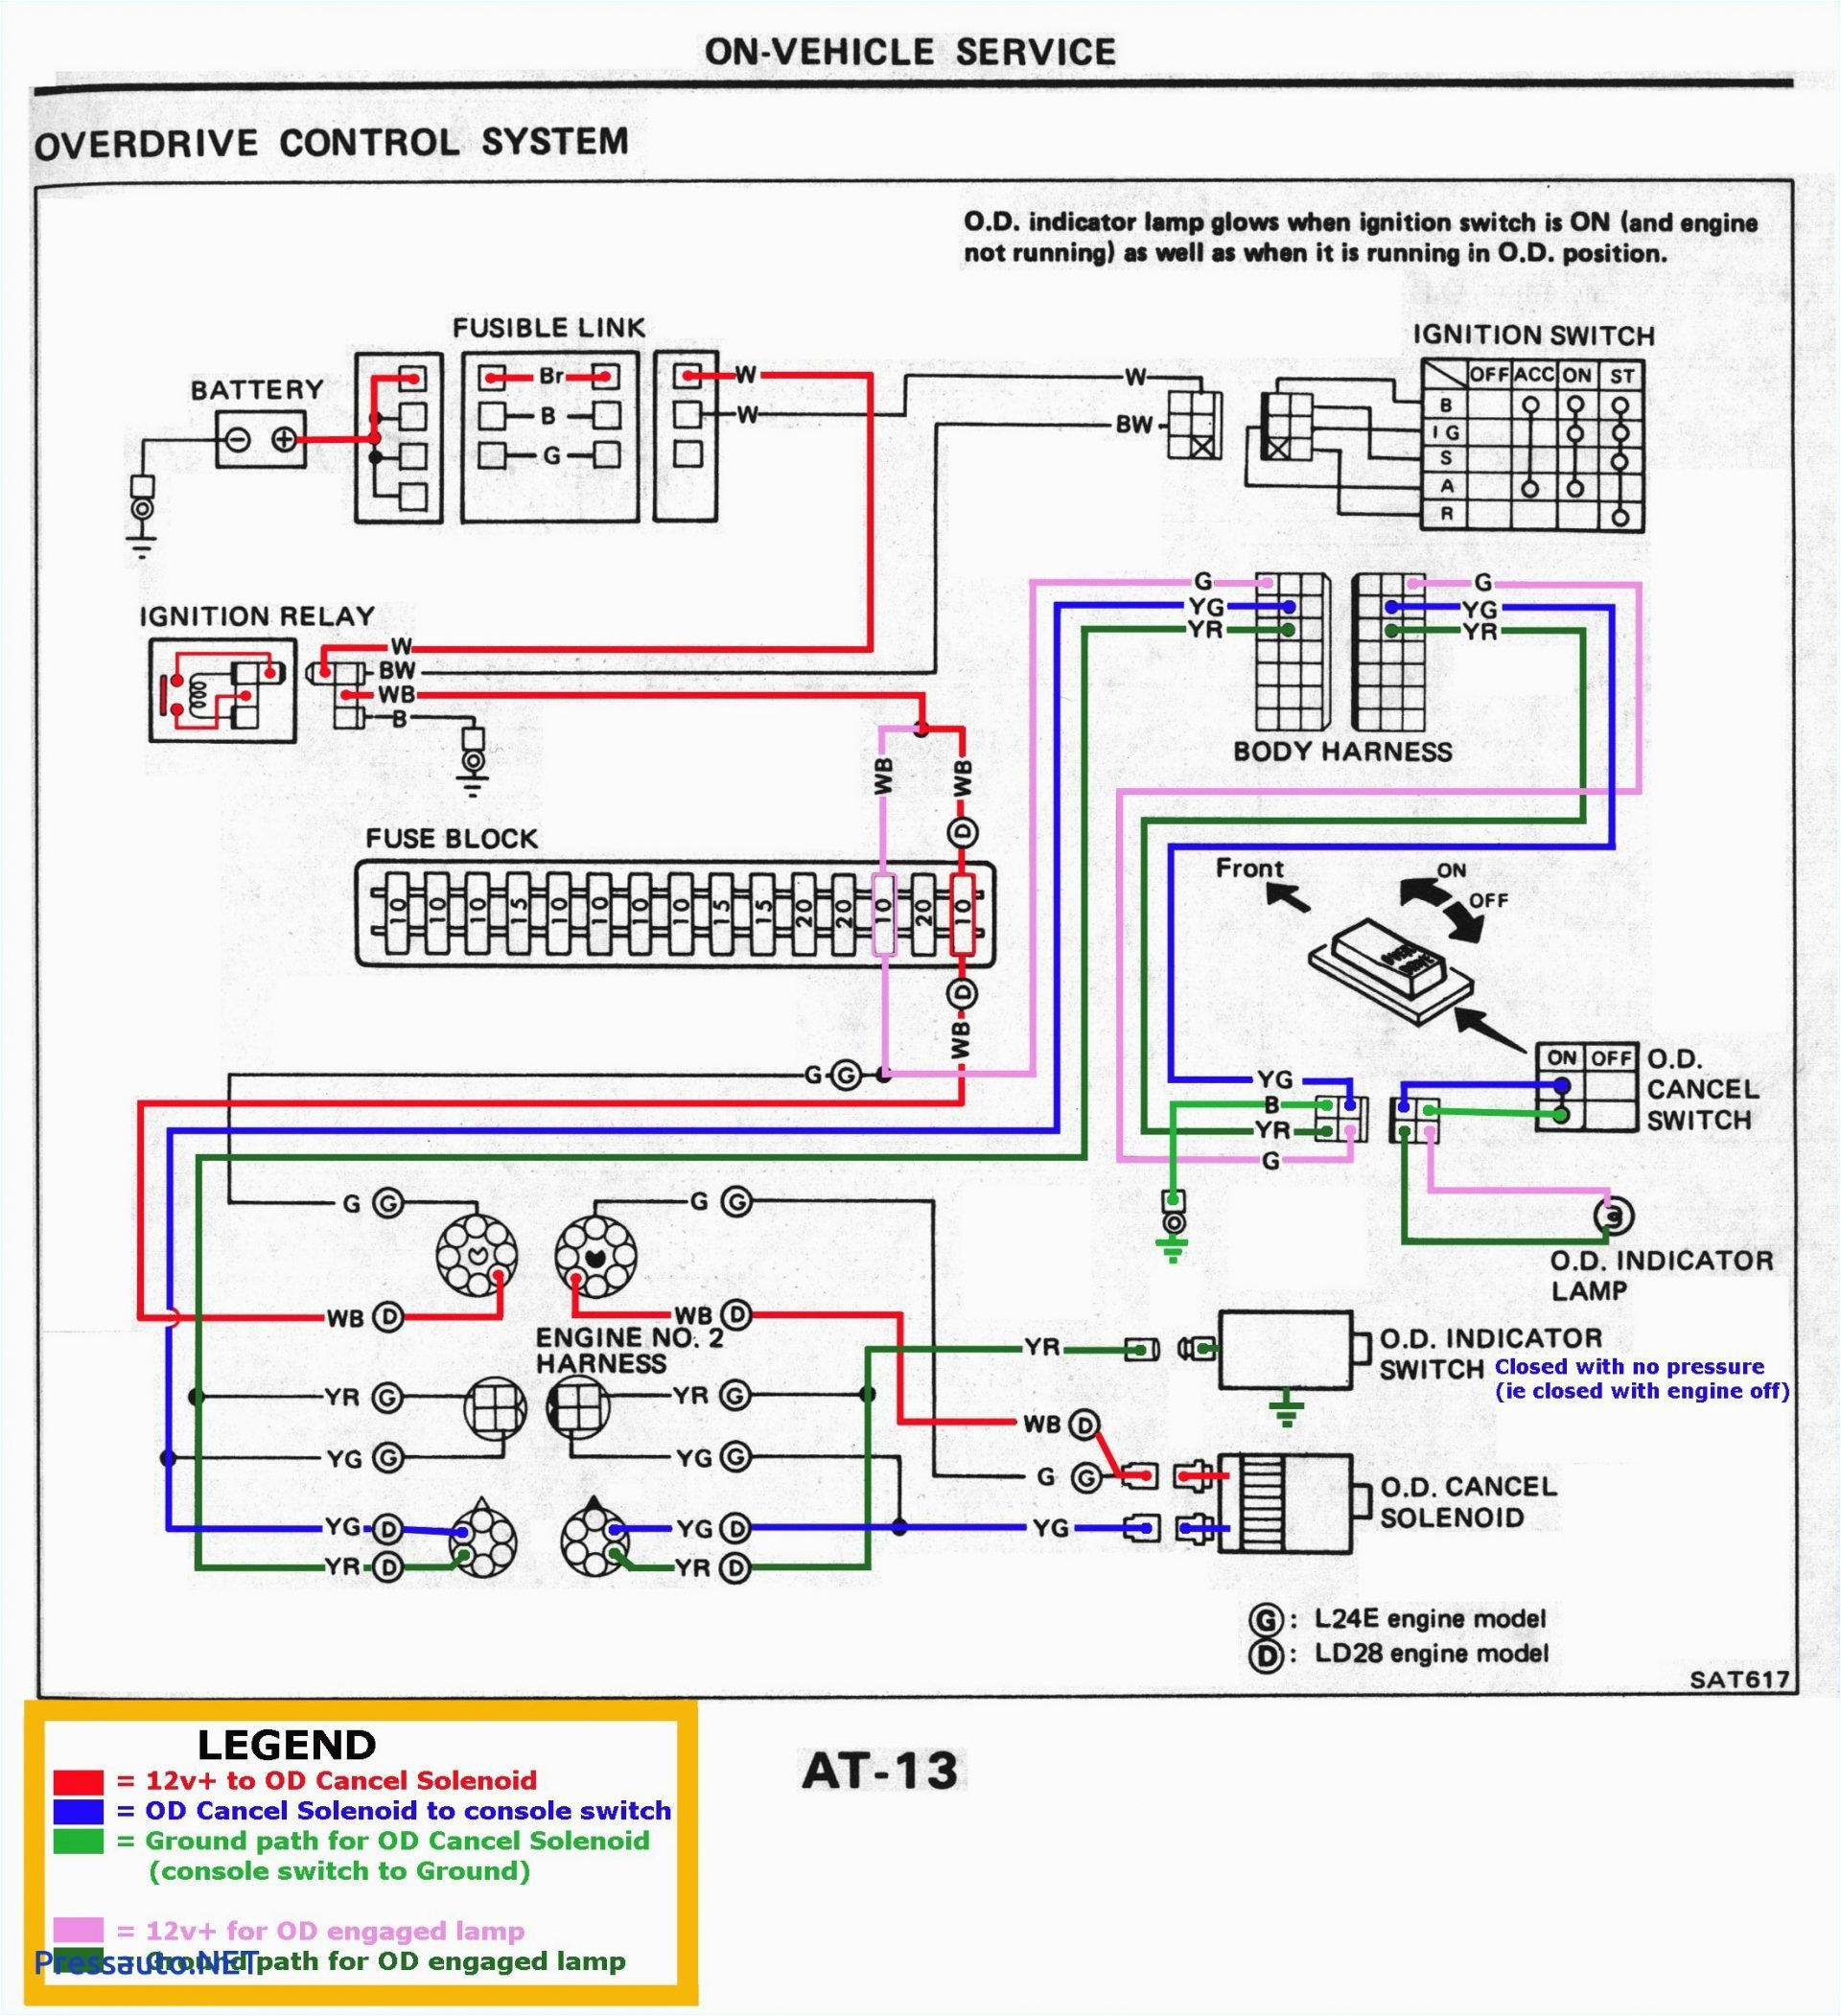 2002 Chevy Cavalier Wiring Diagram 2002 Silverado Wiring Diagram Pdf Wiring Diagram User